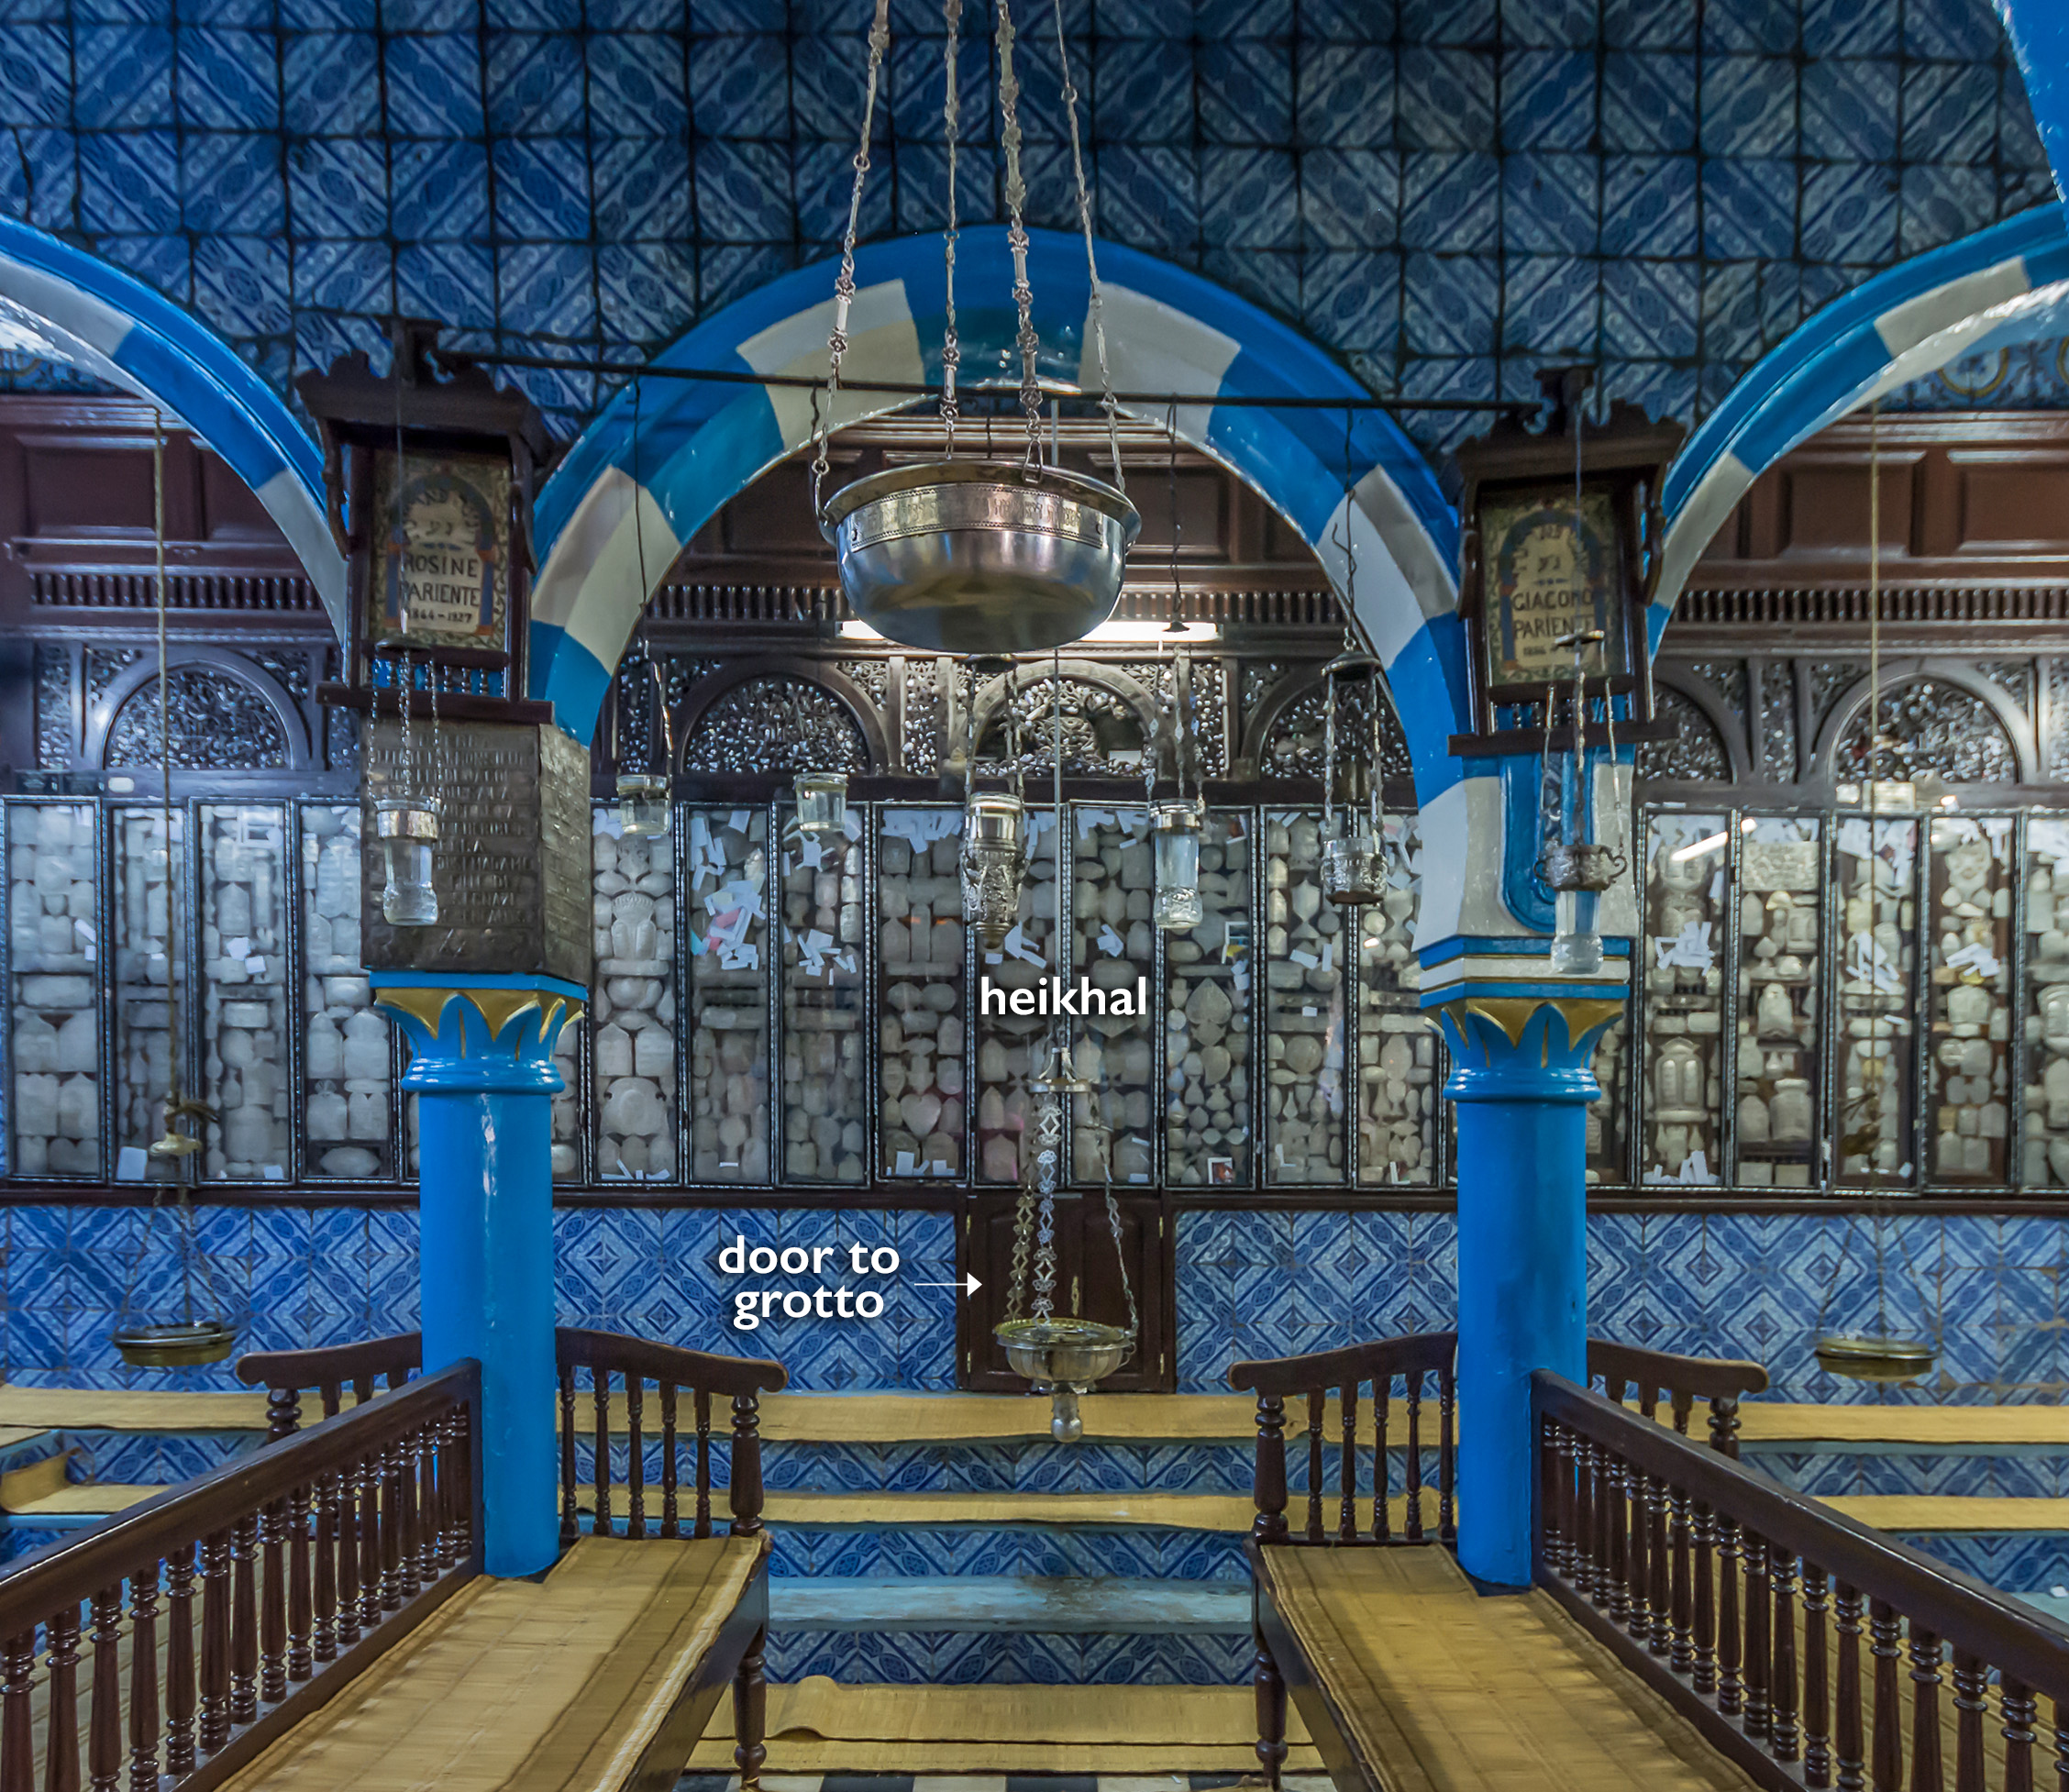 Heikhal, Ghriba synagogue, 19th century, Djerba, Tunisia (photo: IssamBarhoumi, CC BY-SA 4.0)